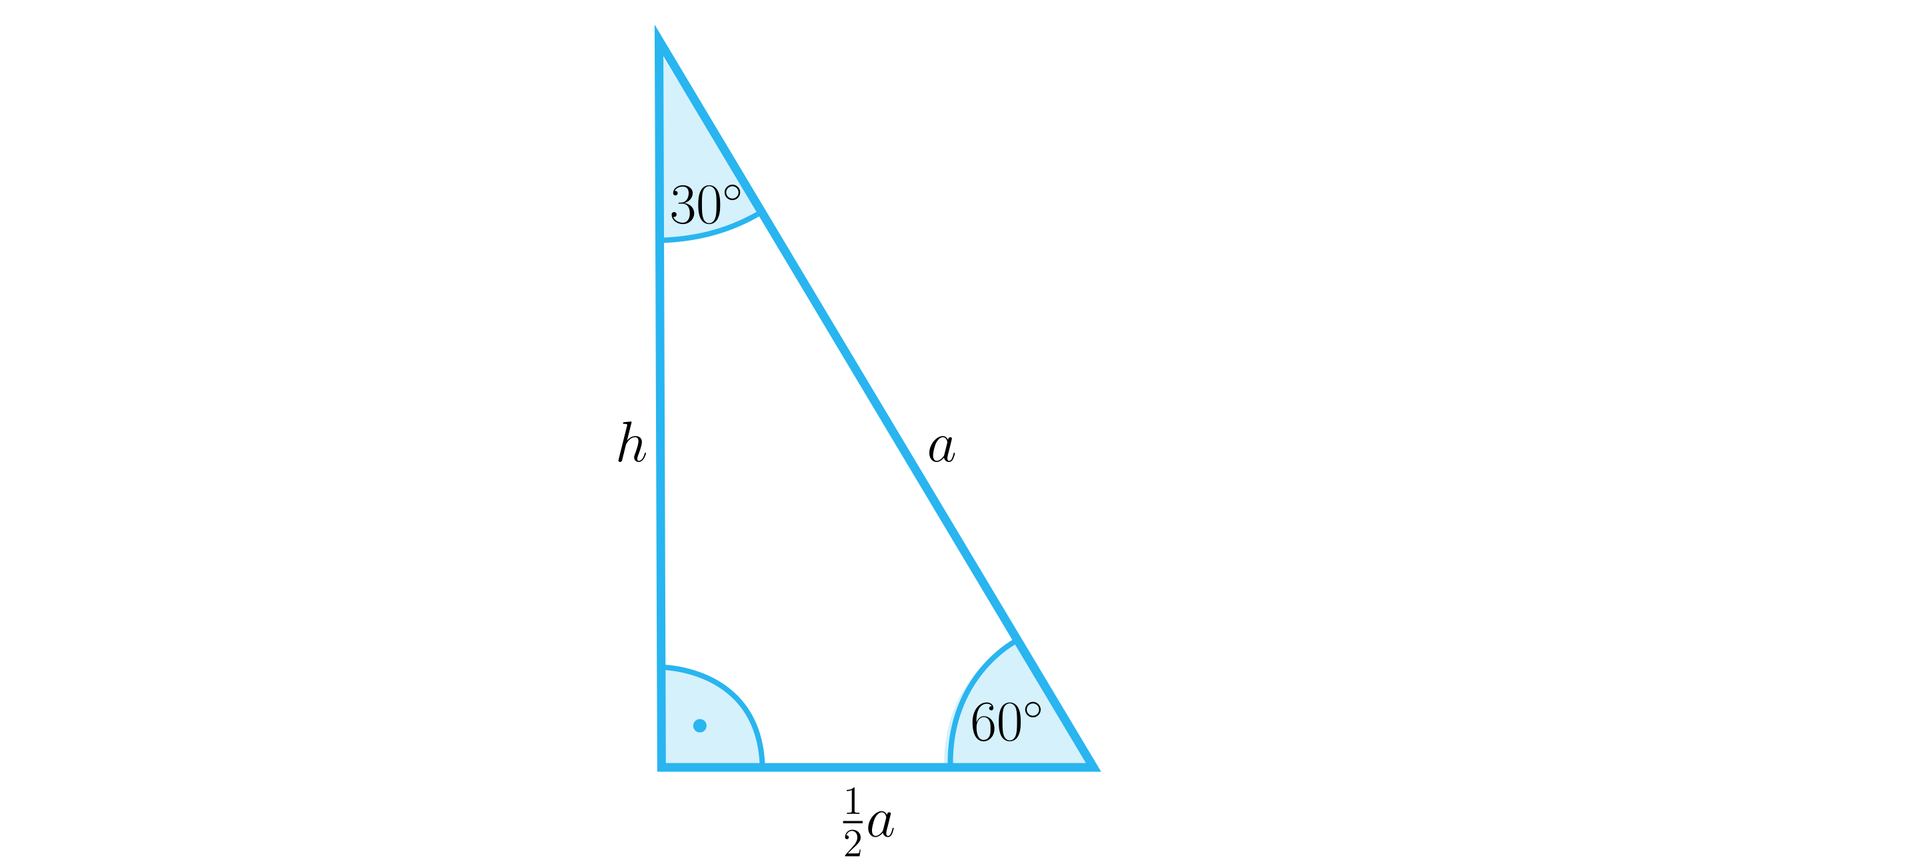 Ilustracja przedstawia trójkąt prostokątny o pionowej przyprostokątnej h, o przeciwprostokątnej a oraz o podstawie a2. W trójkącie oznaczono wszystkie trzy kąty wewnętrzne. Między bokami h oraz a2 oznaczono kąt prosty, między bokami a2 oraz a oznaczono kąt o mierze sześćdziesięciu stopni, a między bokami a oraz h oznaczono kąt o mierze trzydziestu stopni.